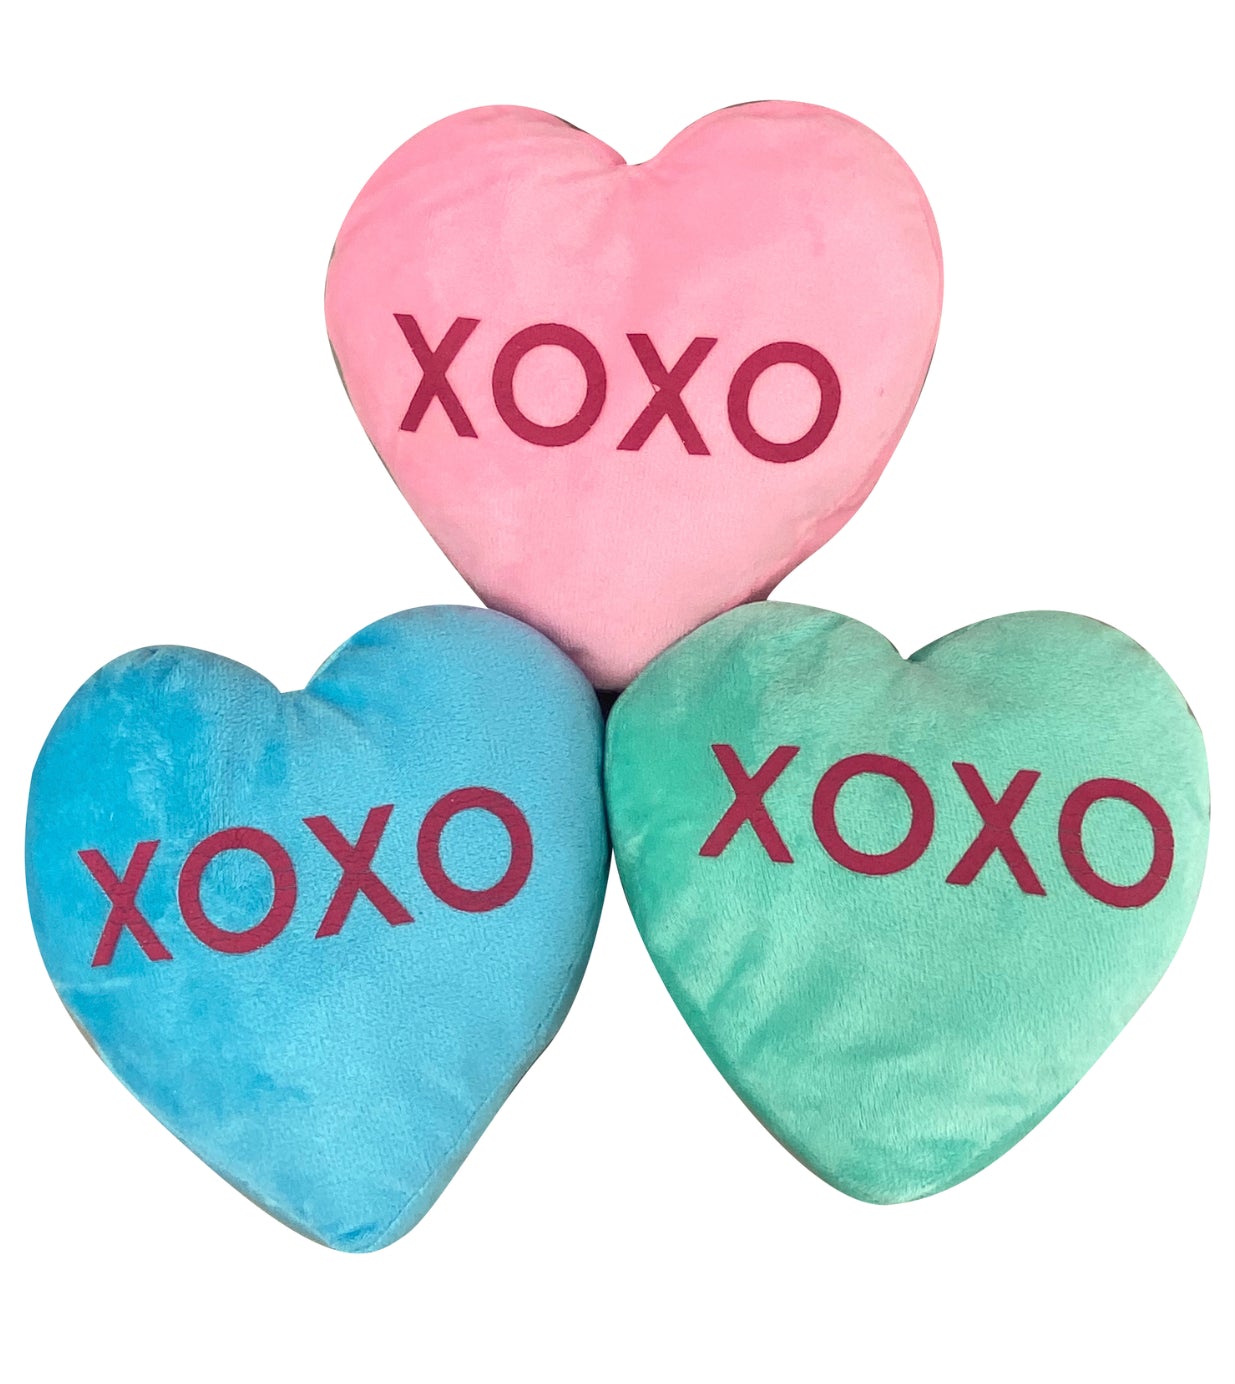 Plush conversation XOXO hearts SET of 3 medium hearts - Greenery MarketSeasonal & Holiday Decorations62988ASST